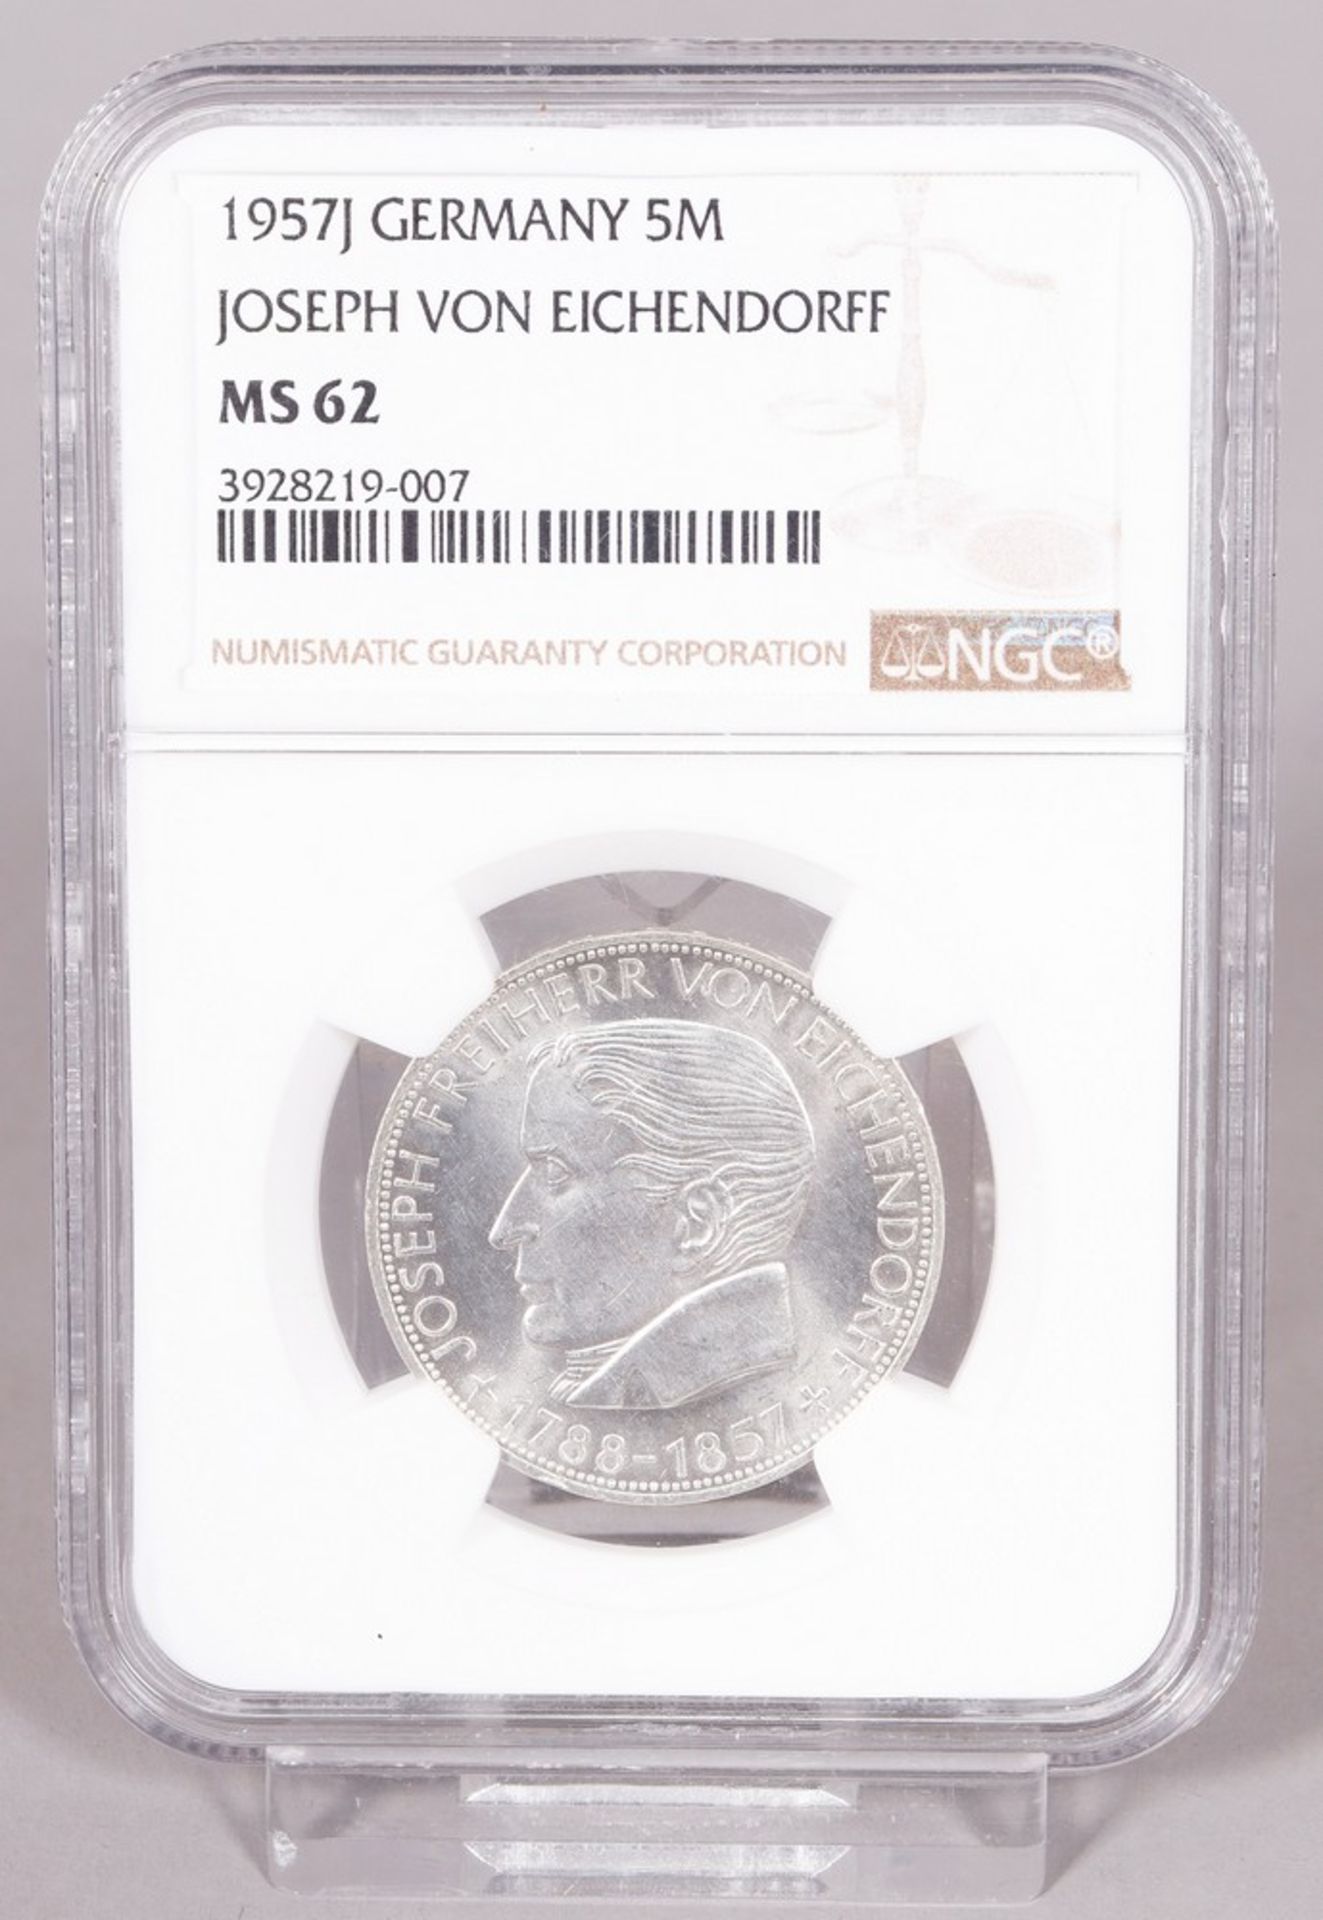 Münze, 5 DM, Joseph von Eichendorff, 1957 